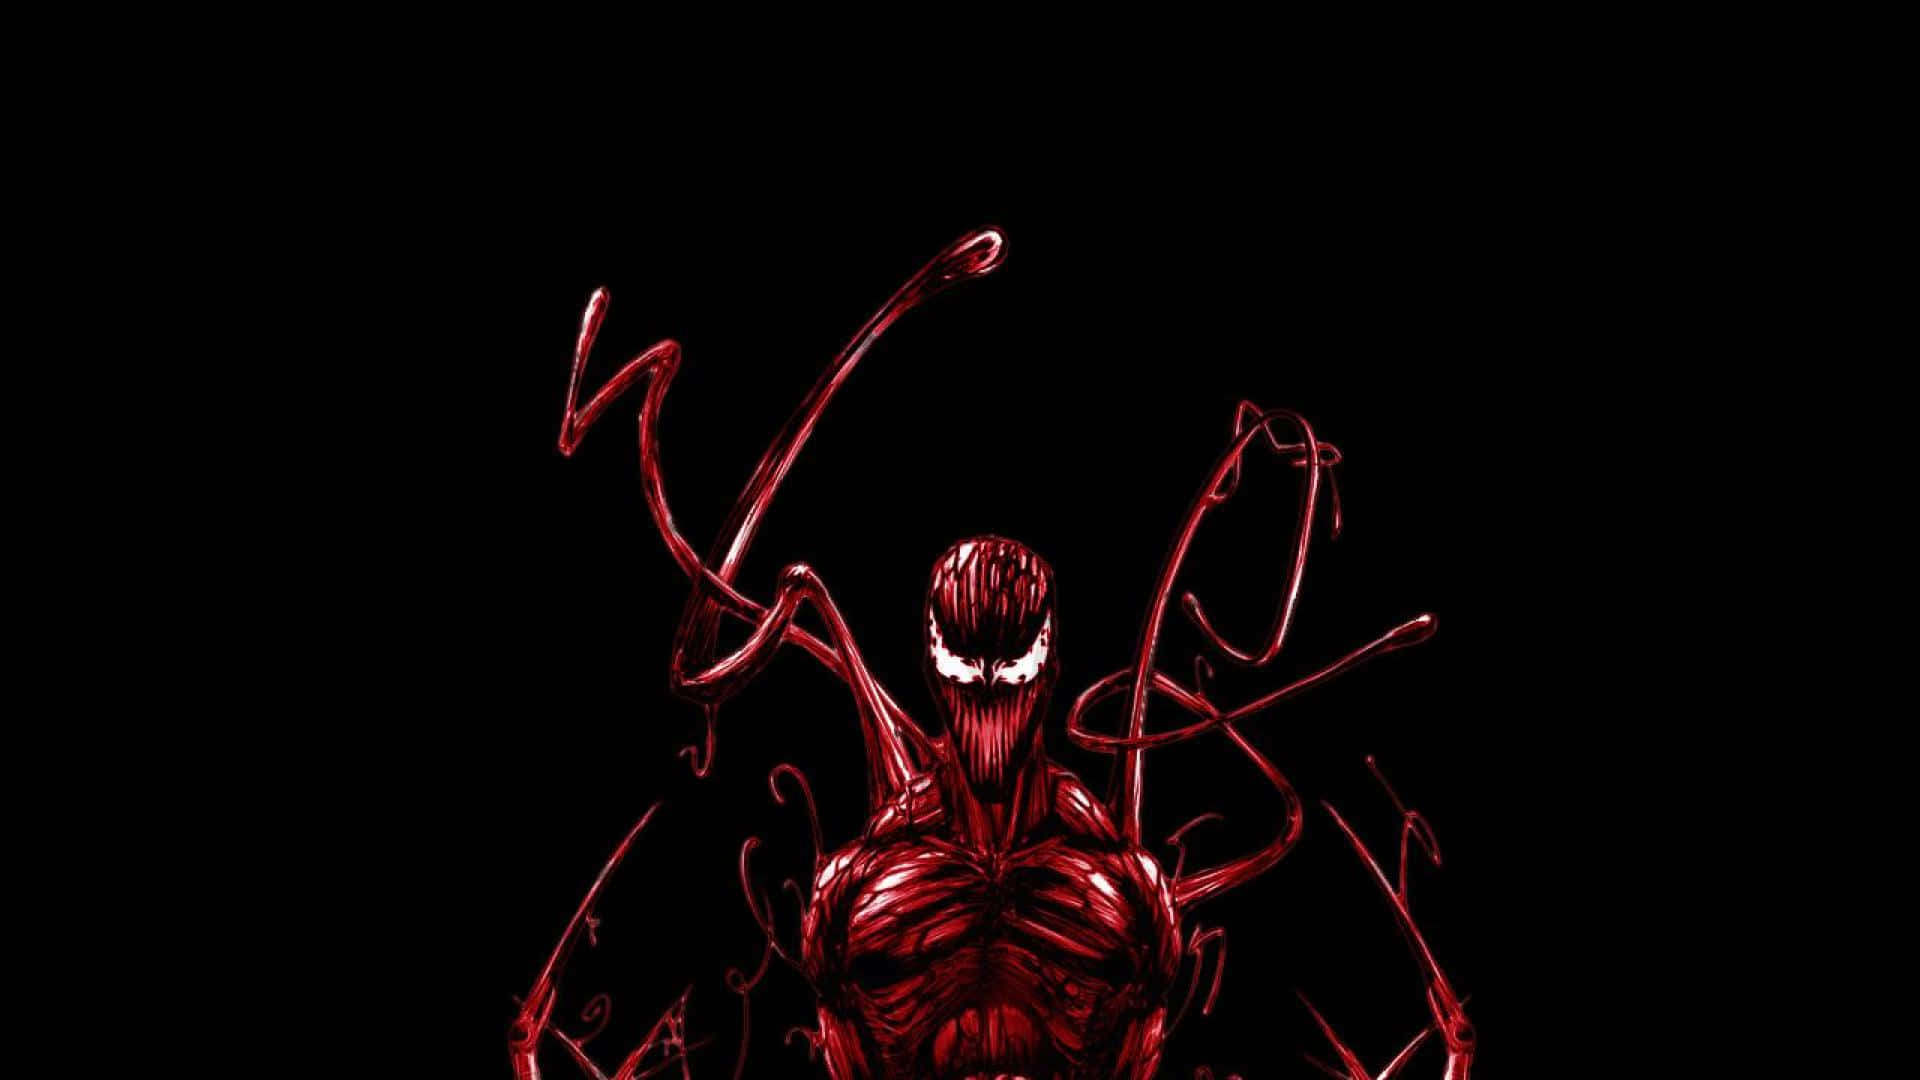 Symbiotiskasuperskurken Carnage Utmanar Marvel-hjältarna På Bakgrundsbilden Till Din Dator Eller Mobiltelefon. Wallpaper